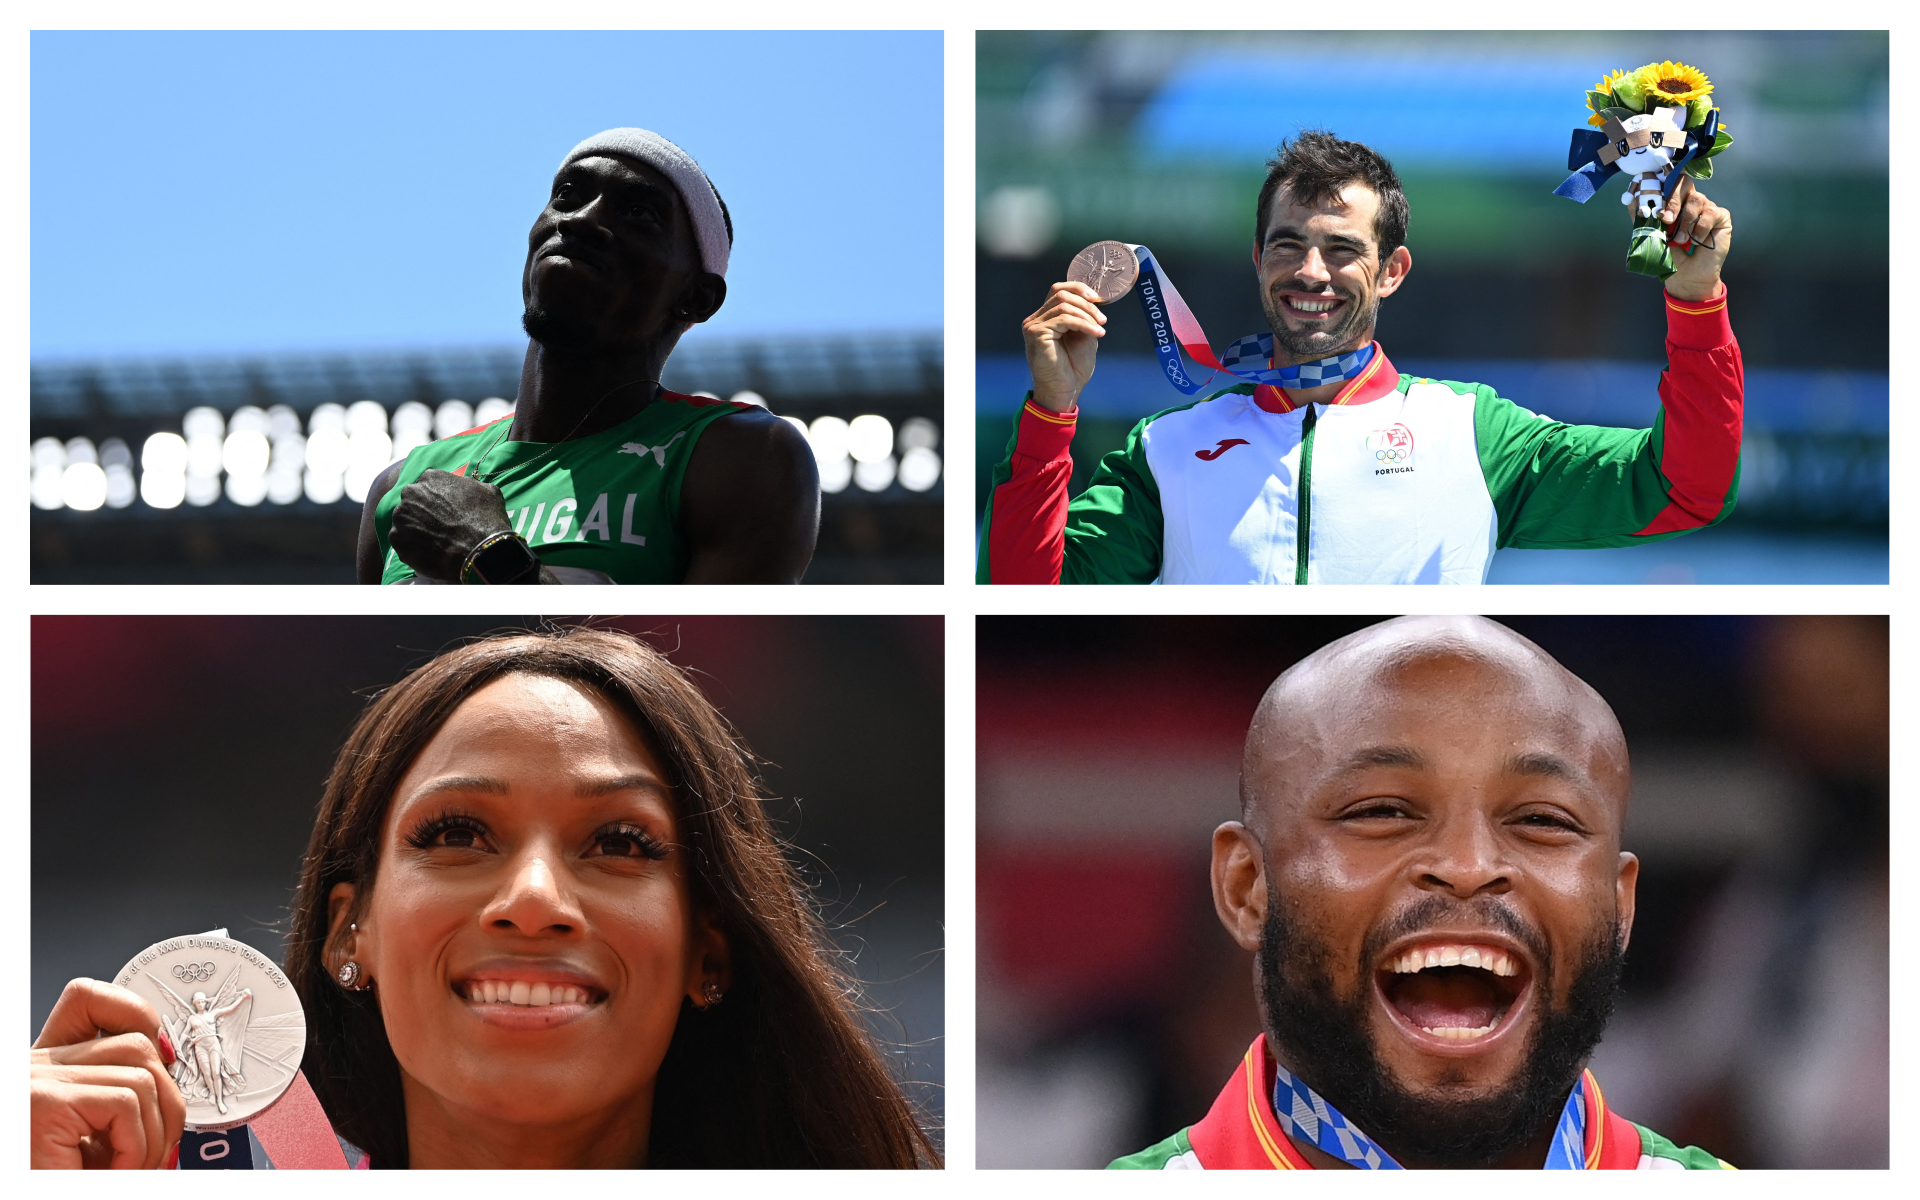 Quanto paga o Governo português aos atletas que conquistaram medalhas nos Jogos Olímpicos?